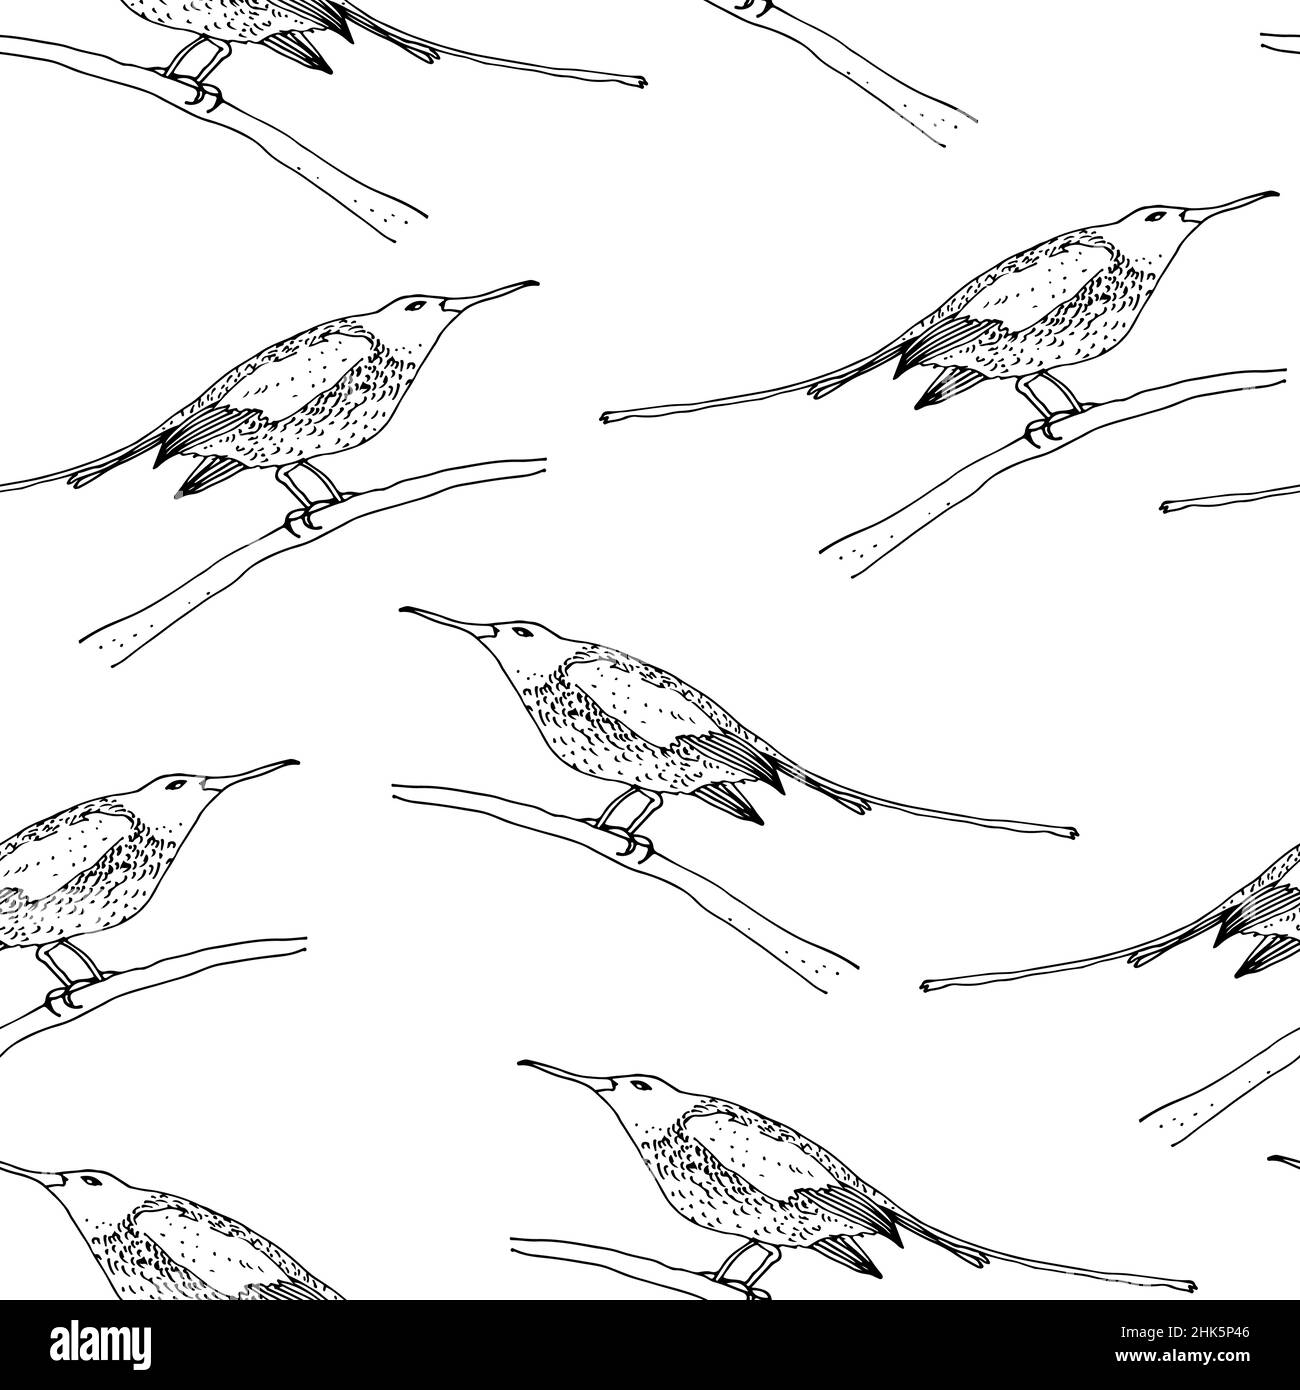 Sunbird vector seamless pattern, bird family Nectariniidae of passerine birds, isolated on white background Stock Vector